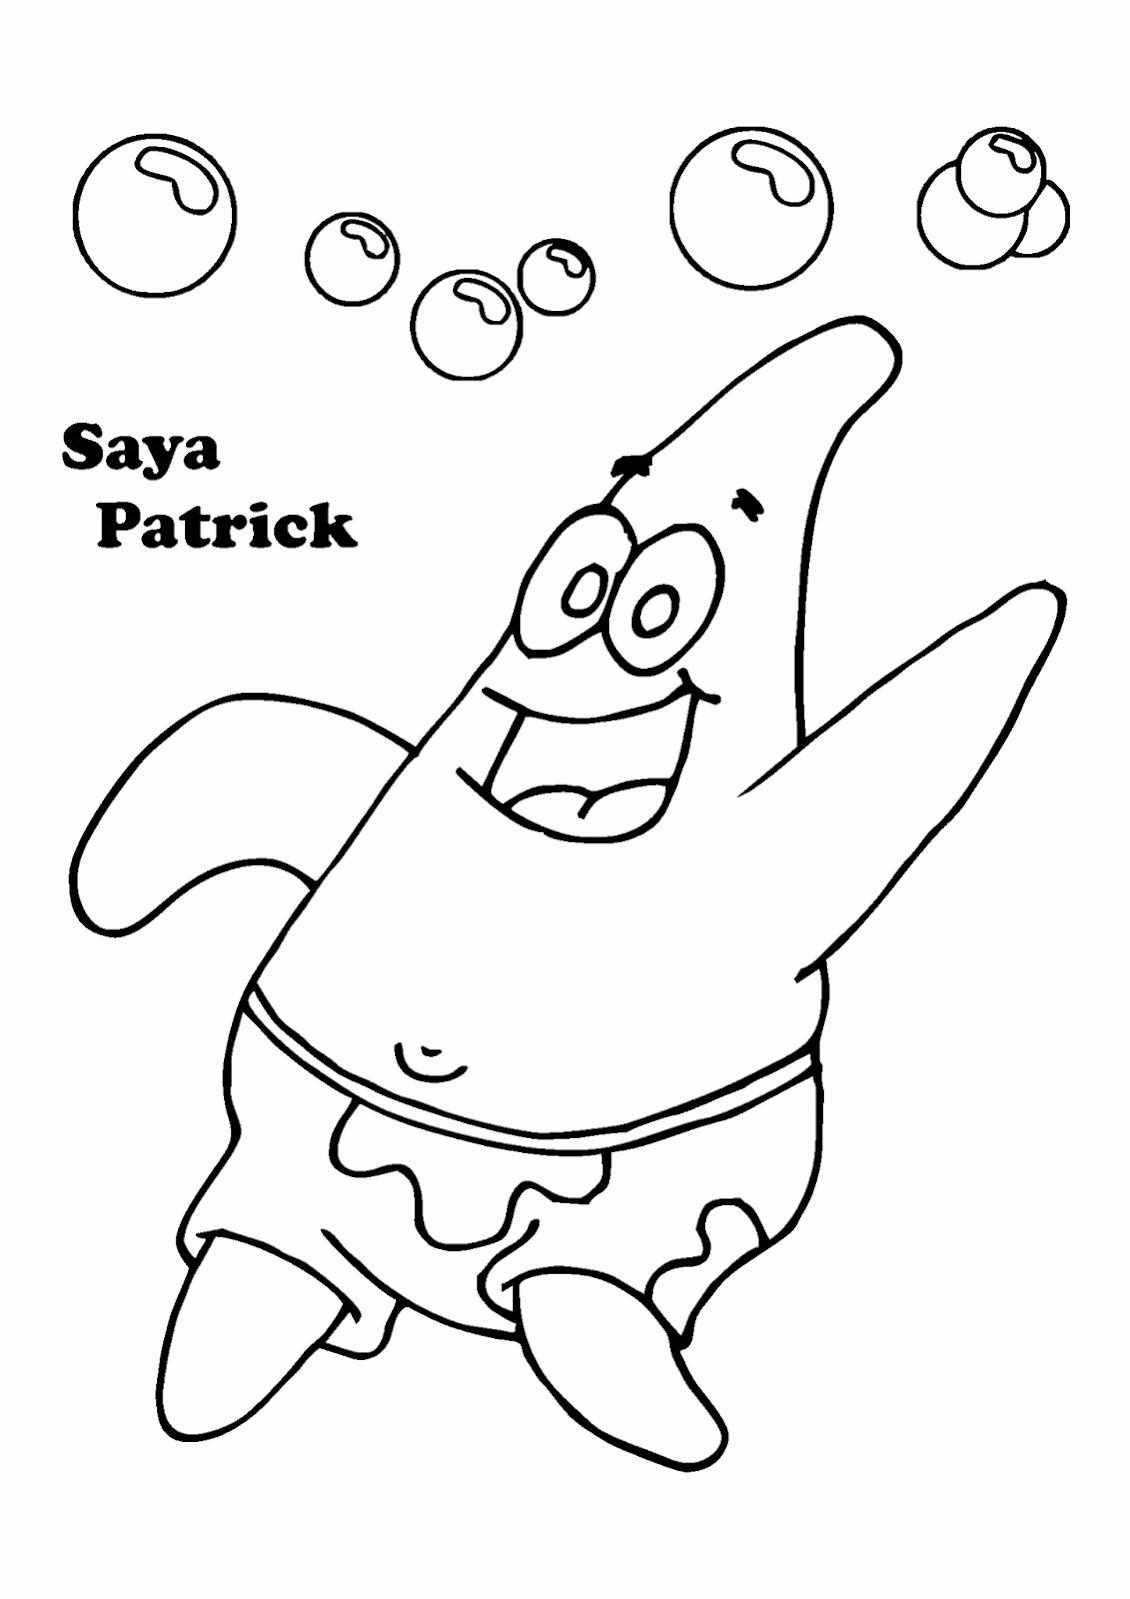 Gambar Hitam Putih Patrick